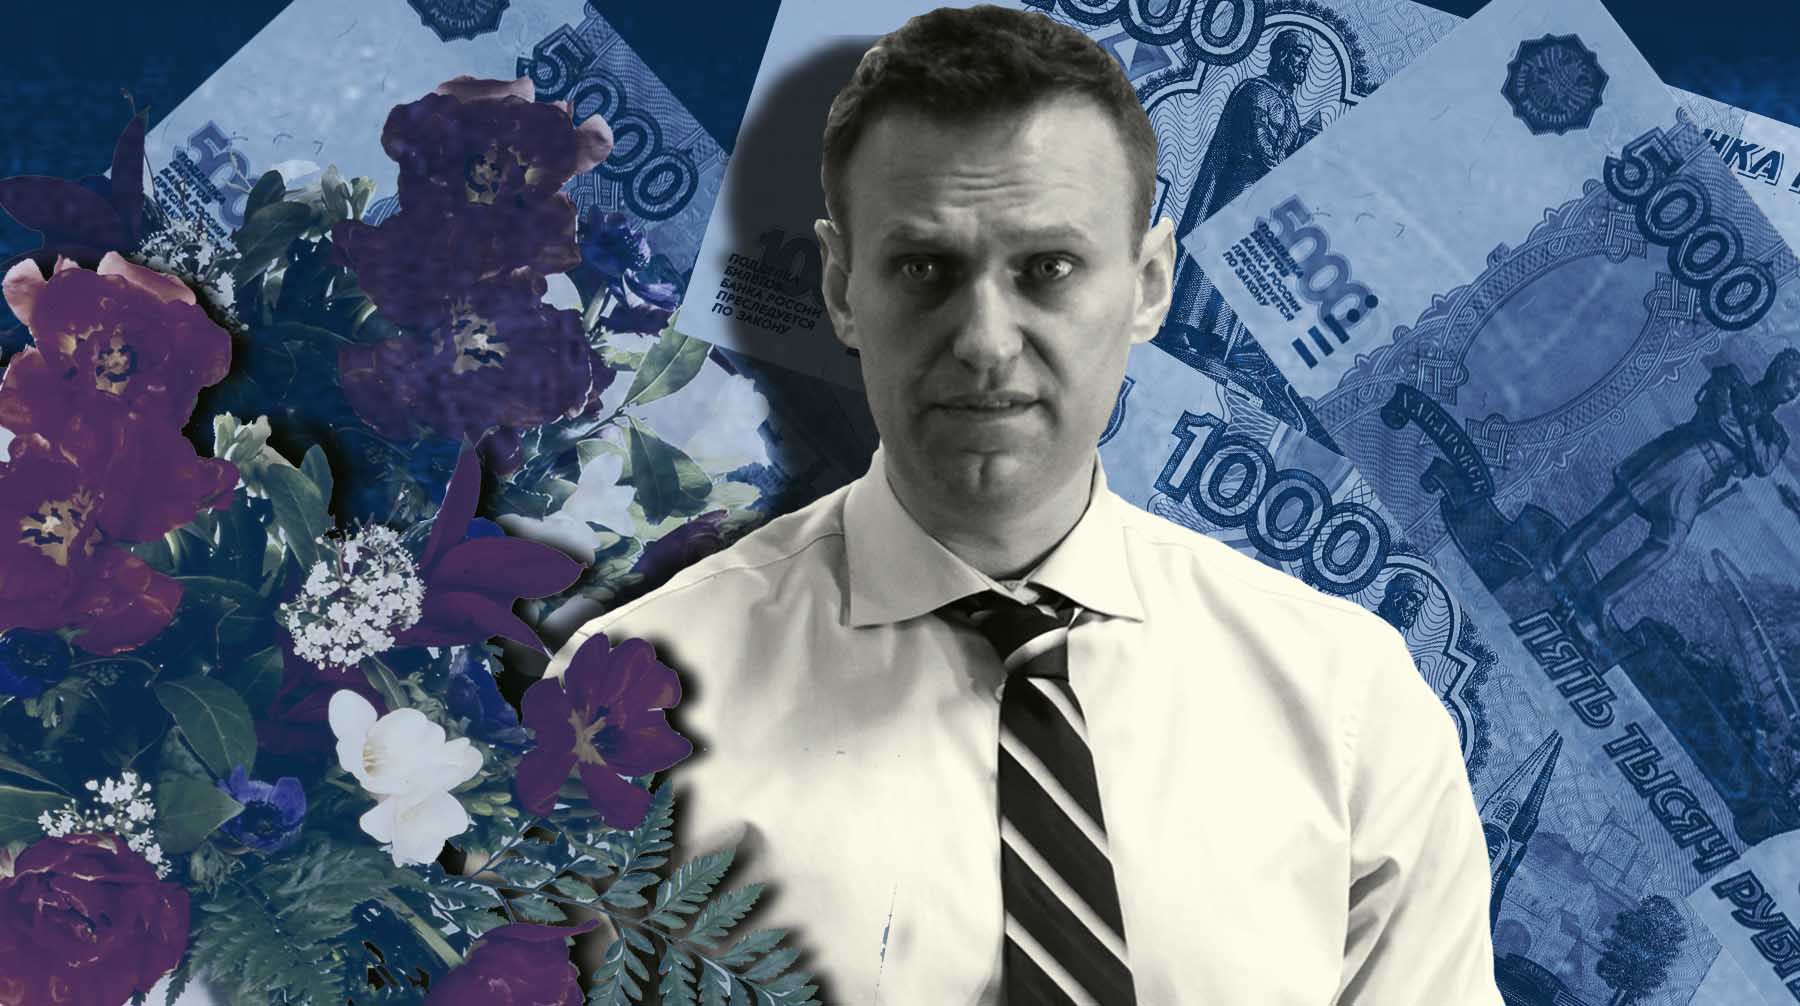 Продажи в цветочных магазинах рядом с могилой Навального выросли в два раза